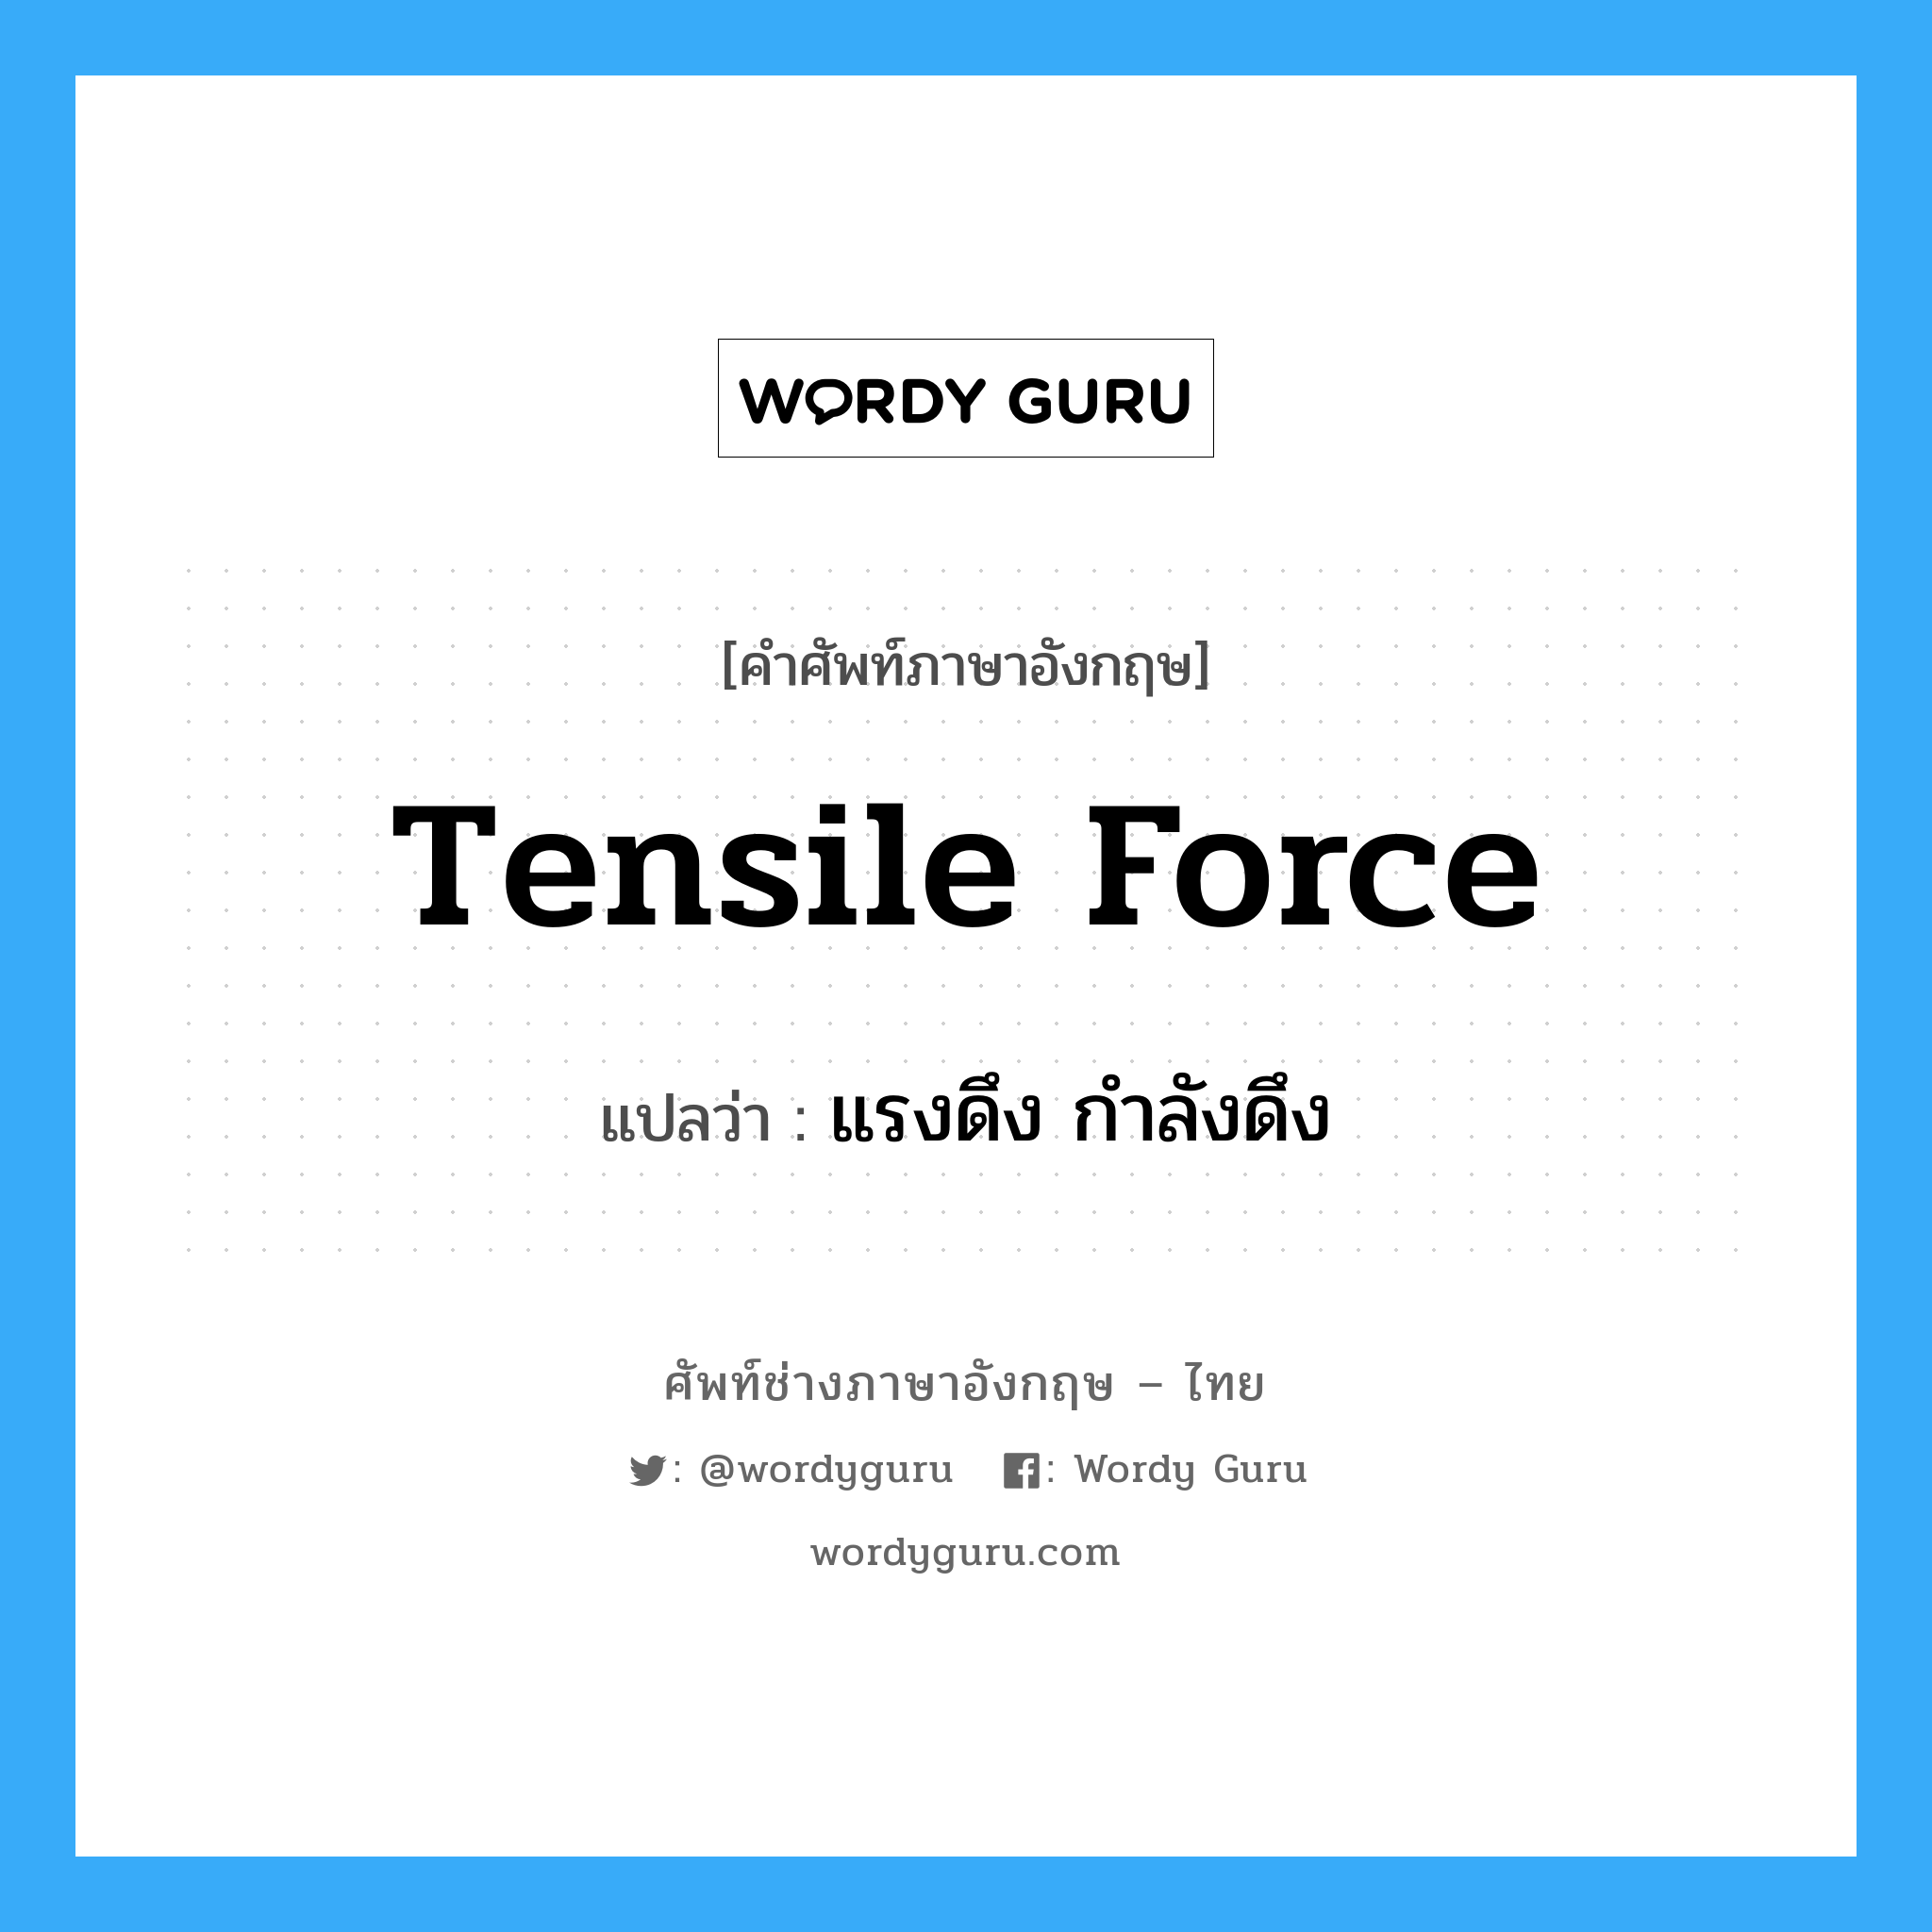 แรงดึง กำลังดึง ภาษาอังกฤษ?, คำศัพท์ช่างภาษาอังกฤษ - ไทย แรงดึง กำลังดึง คำศัพท์ภาษาอังกฤษ แรงดึง กำลังดึง แปลว่า tensile force